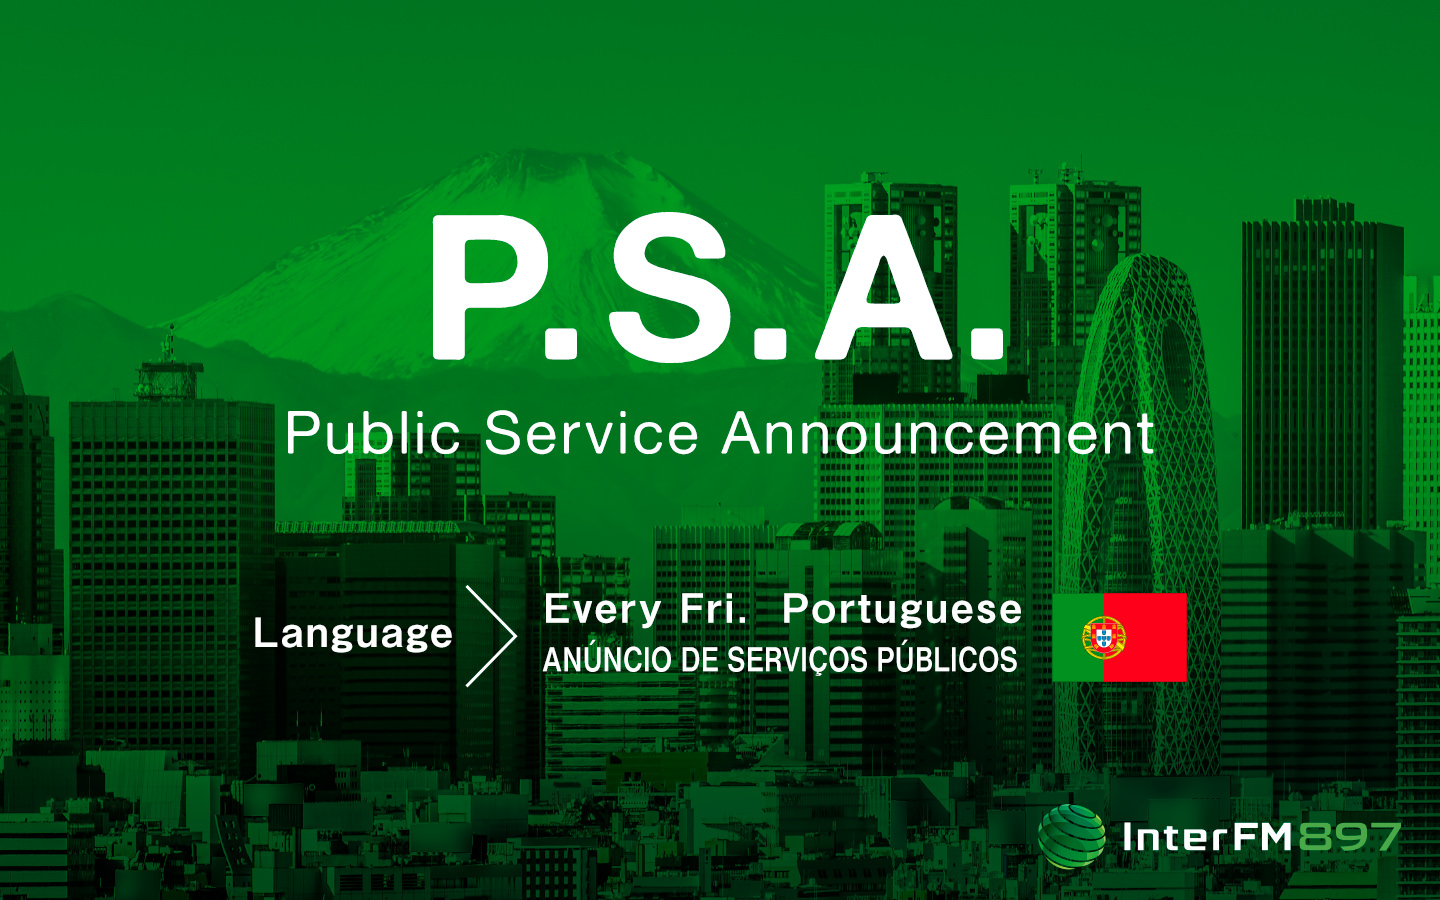 Anúncio de serviços públicos - Public Service Announcement (Português - Portuguese)